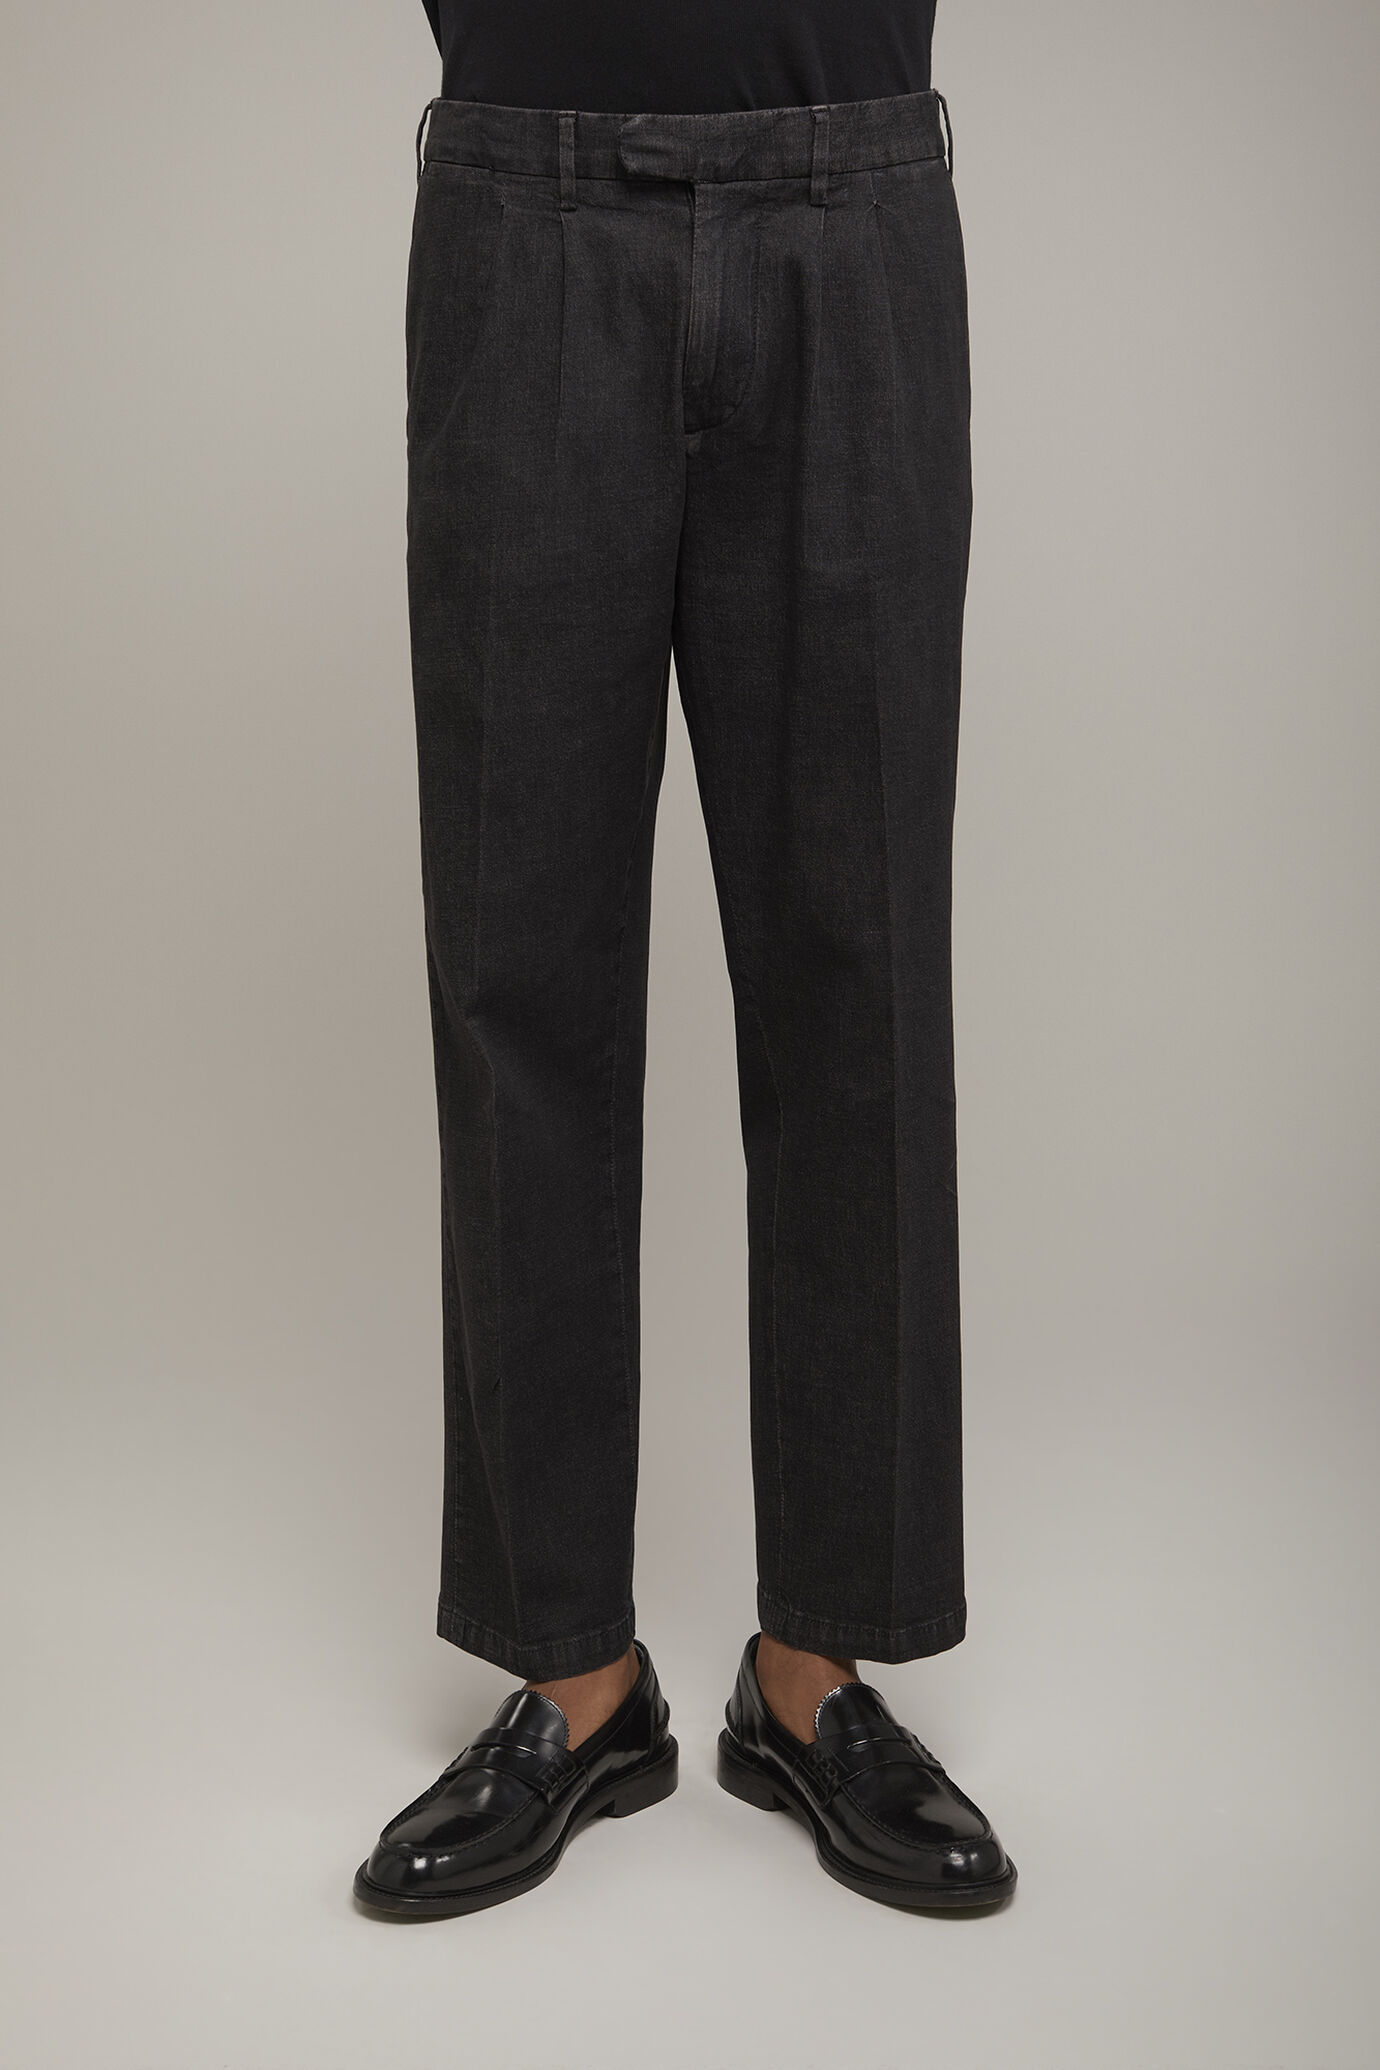 Pantalon technique homme à double pince en tissu denim léger coupe confort image number 3